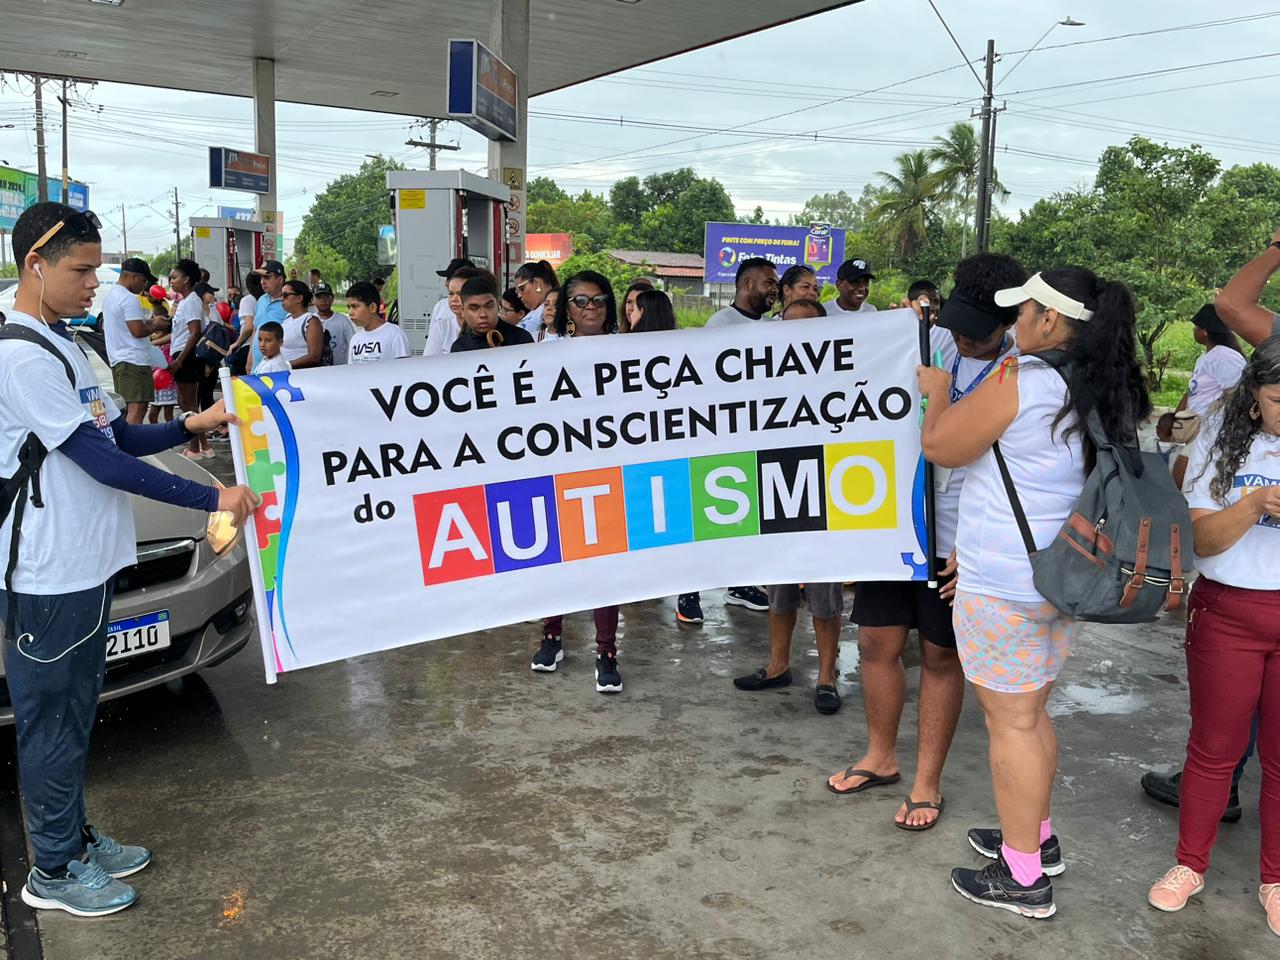 Caminhada “Vamos falar sobre autismo?” promove conscientização em Feira de Santana